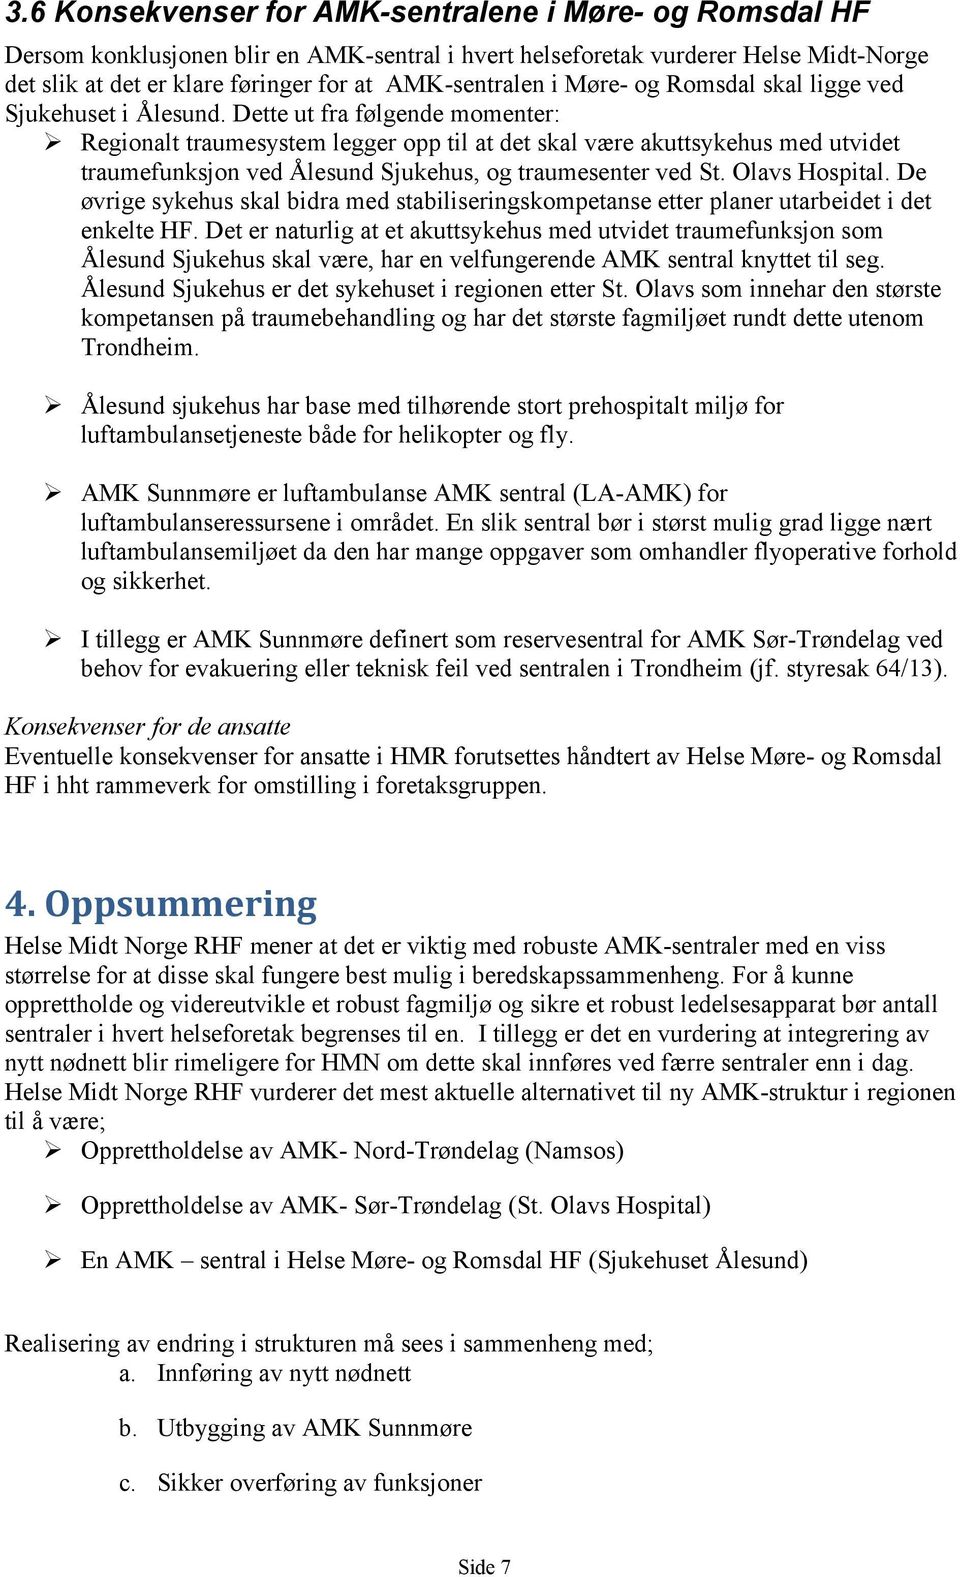 Dette ut fra følgende momenter: Regionalt traumesystem legger opp til at det skal være akuttsykehus med utvidet traumefunksjon ved Ålesund Sjukehus, og traumesenter ved St. Olavs Hospital.